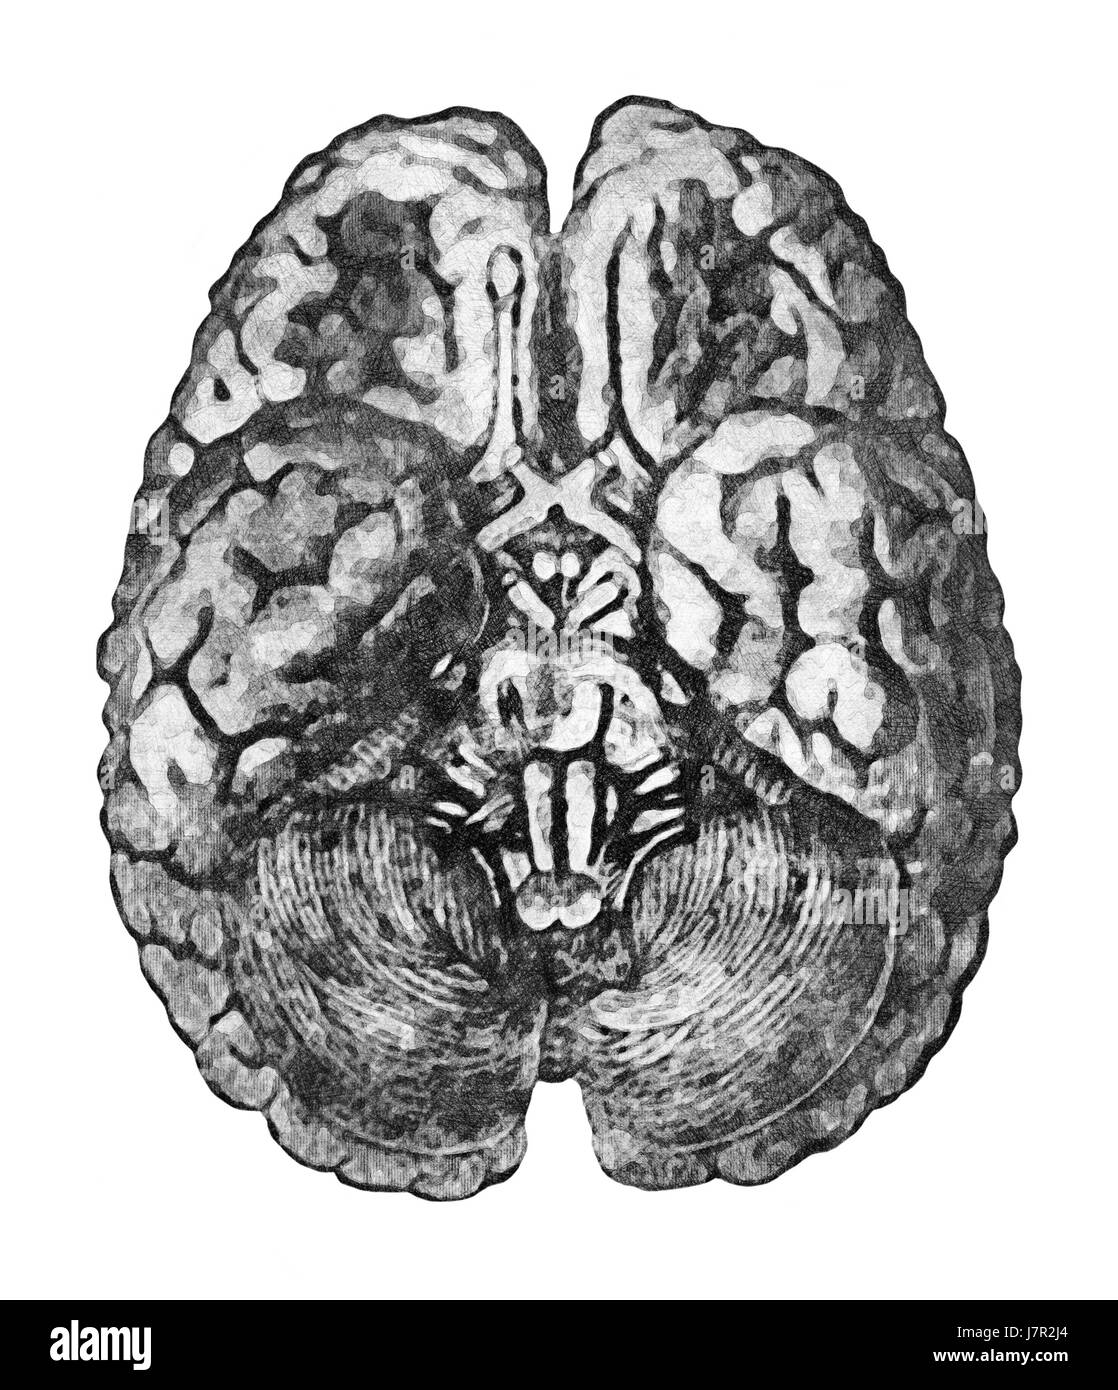 Unter der Oberfläche des Gehirns. Anatomie Bildungskonzept - Blick von unten auf das Gehirn und Hirnstamm. Stockfoto